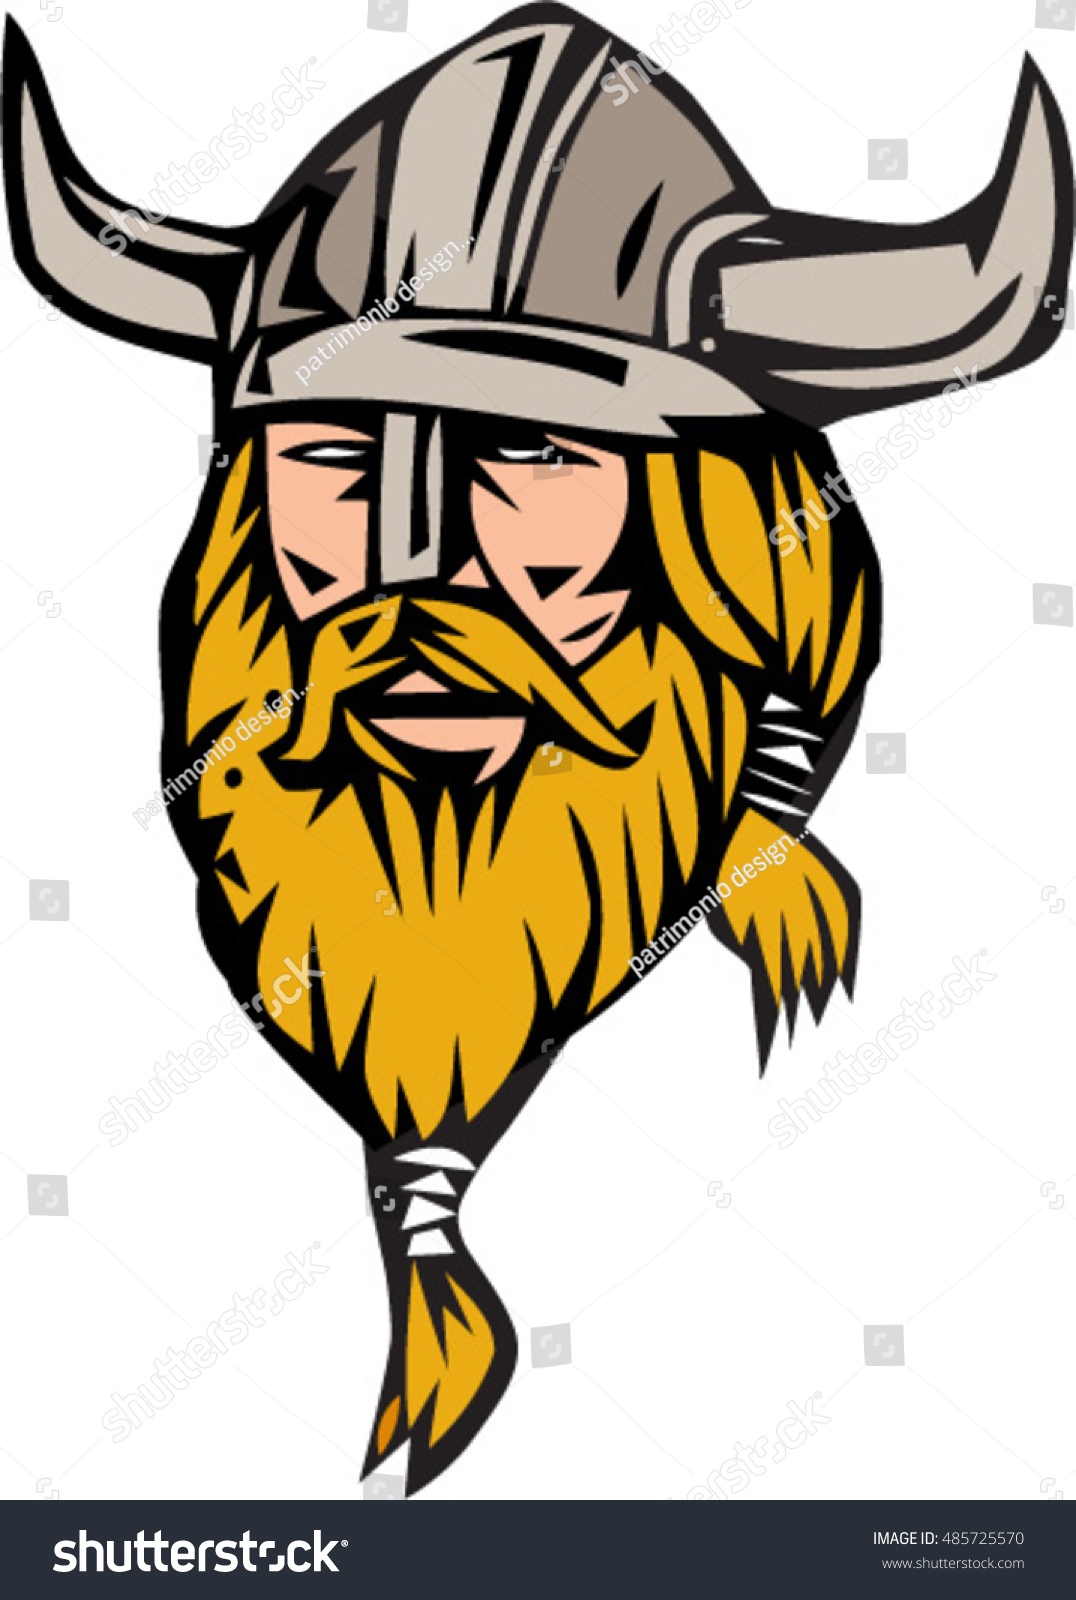 Illustration Norseman Viking Warrior Raider Barbarian Stock Vector Royalty Free